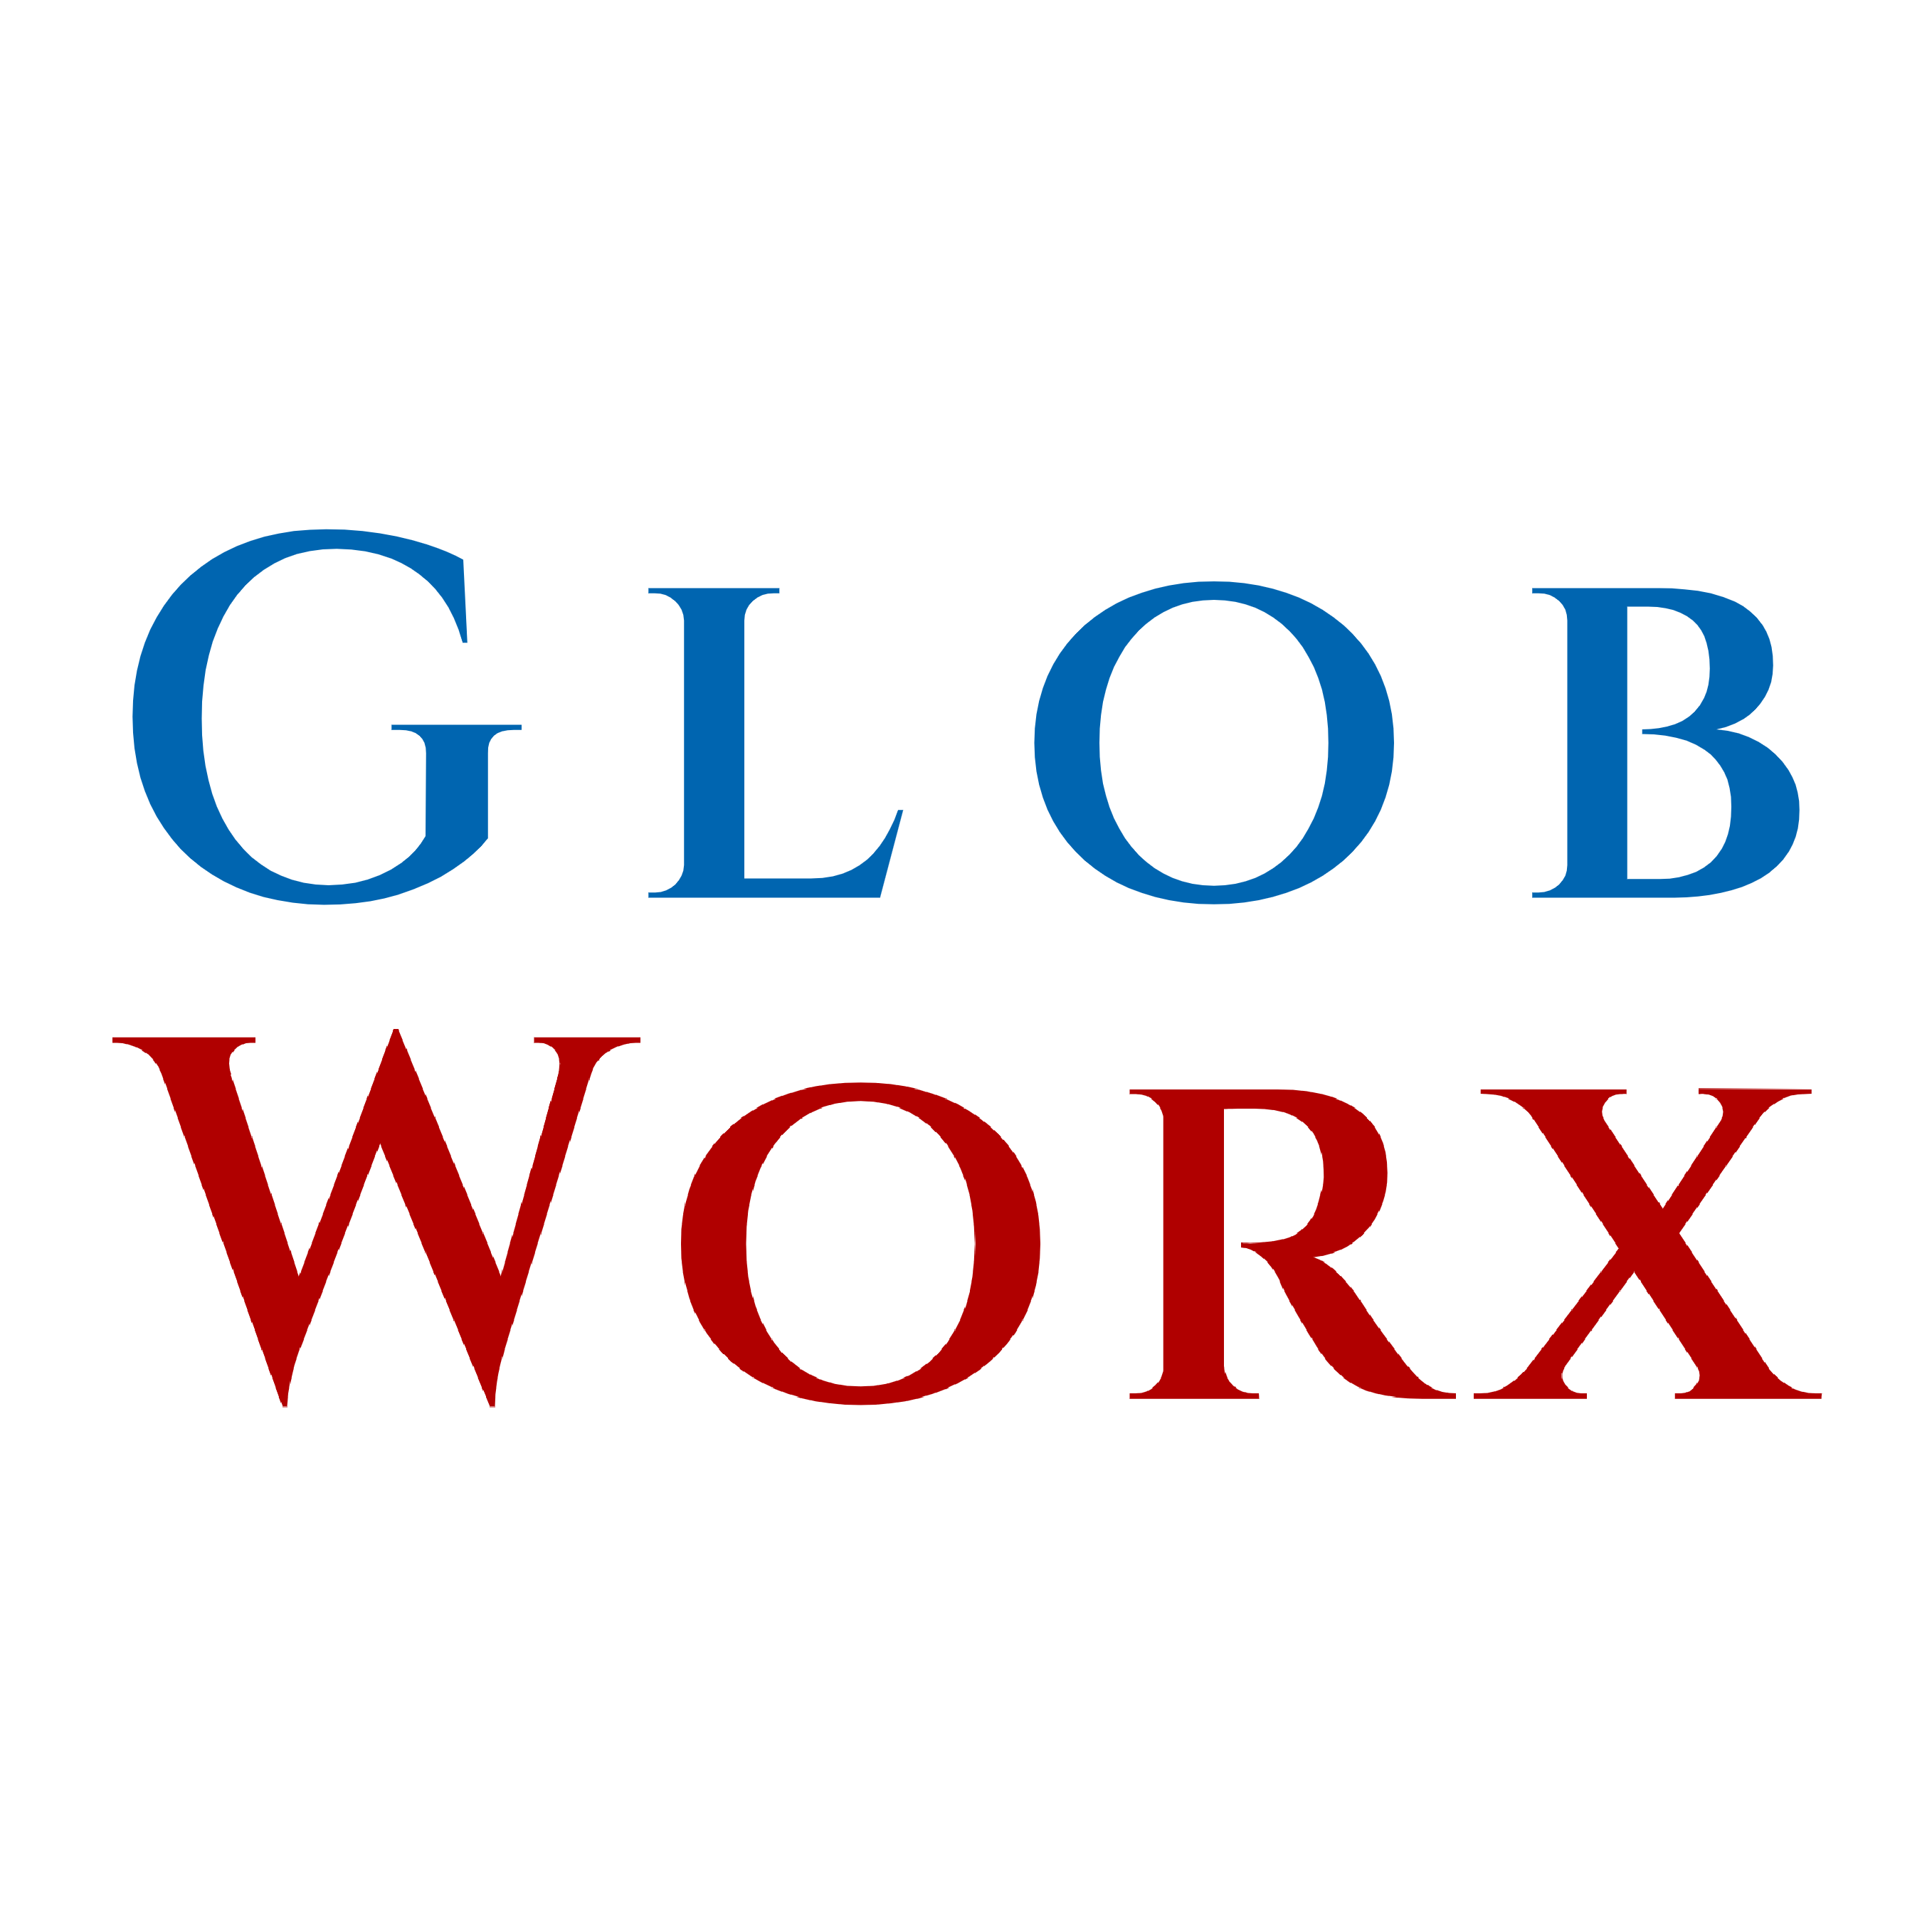 Globworx Ltd